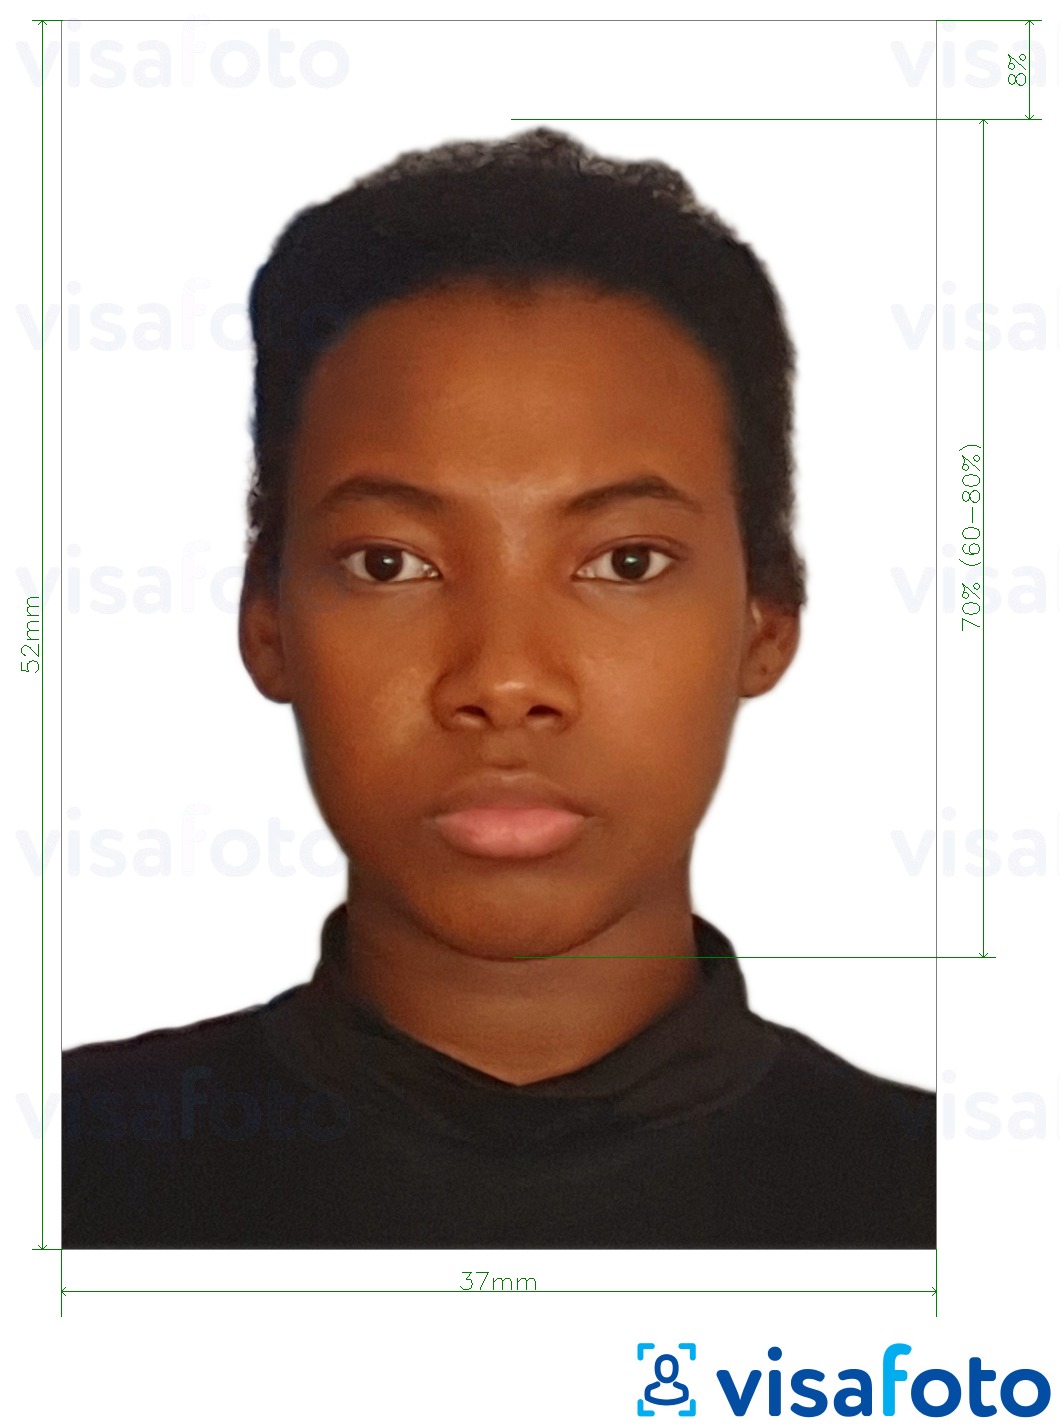 نمونه ی یک عکس برای پاسپورت نامیبیا 37x52mm (3.7x5.2 سانتی متر) با مشخصات دقیق